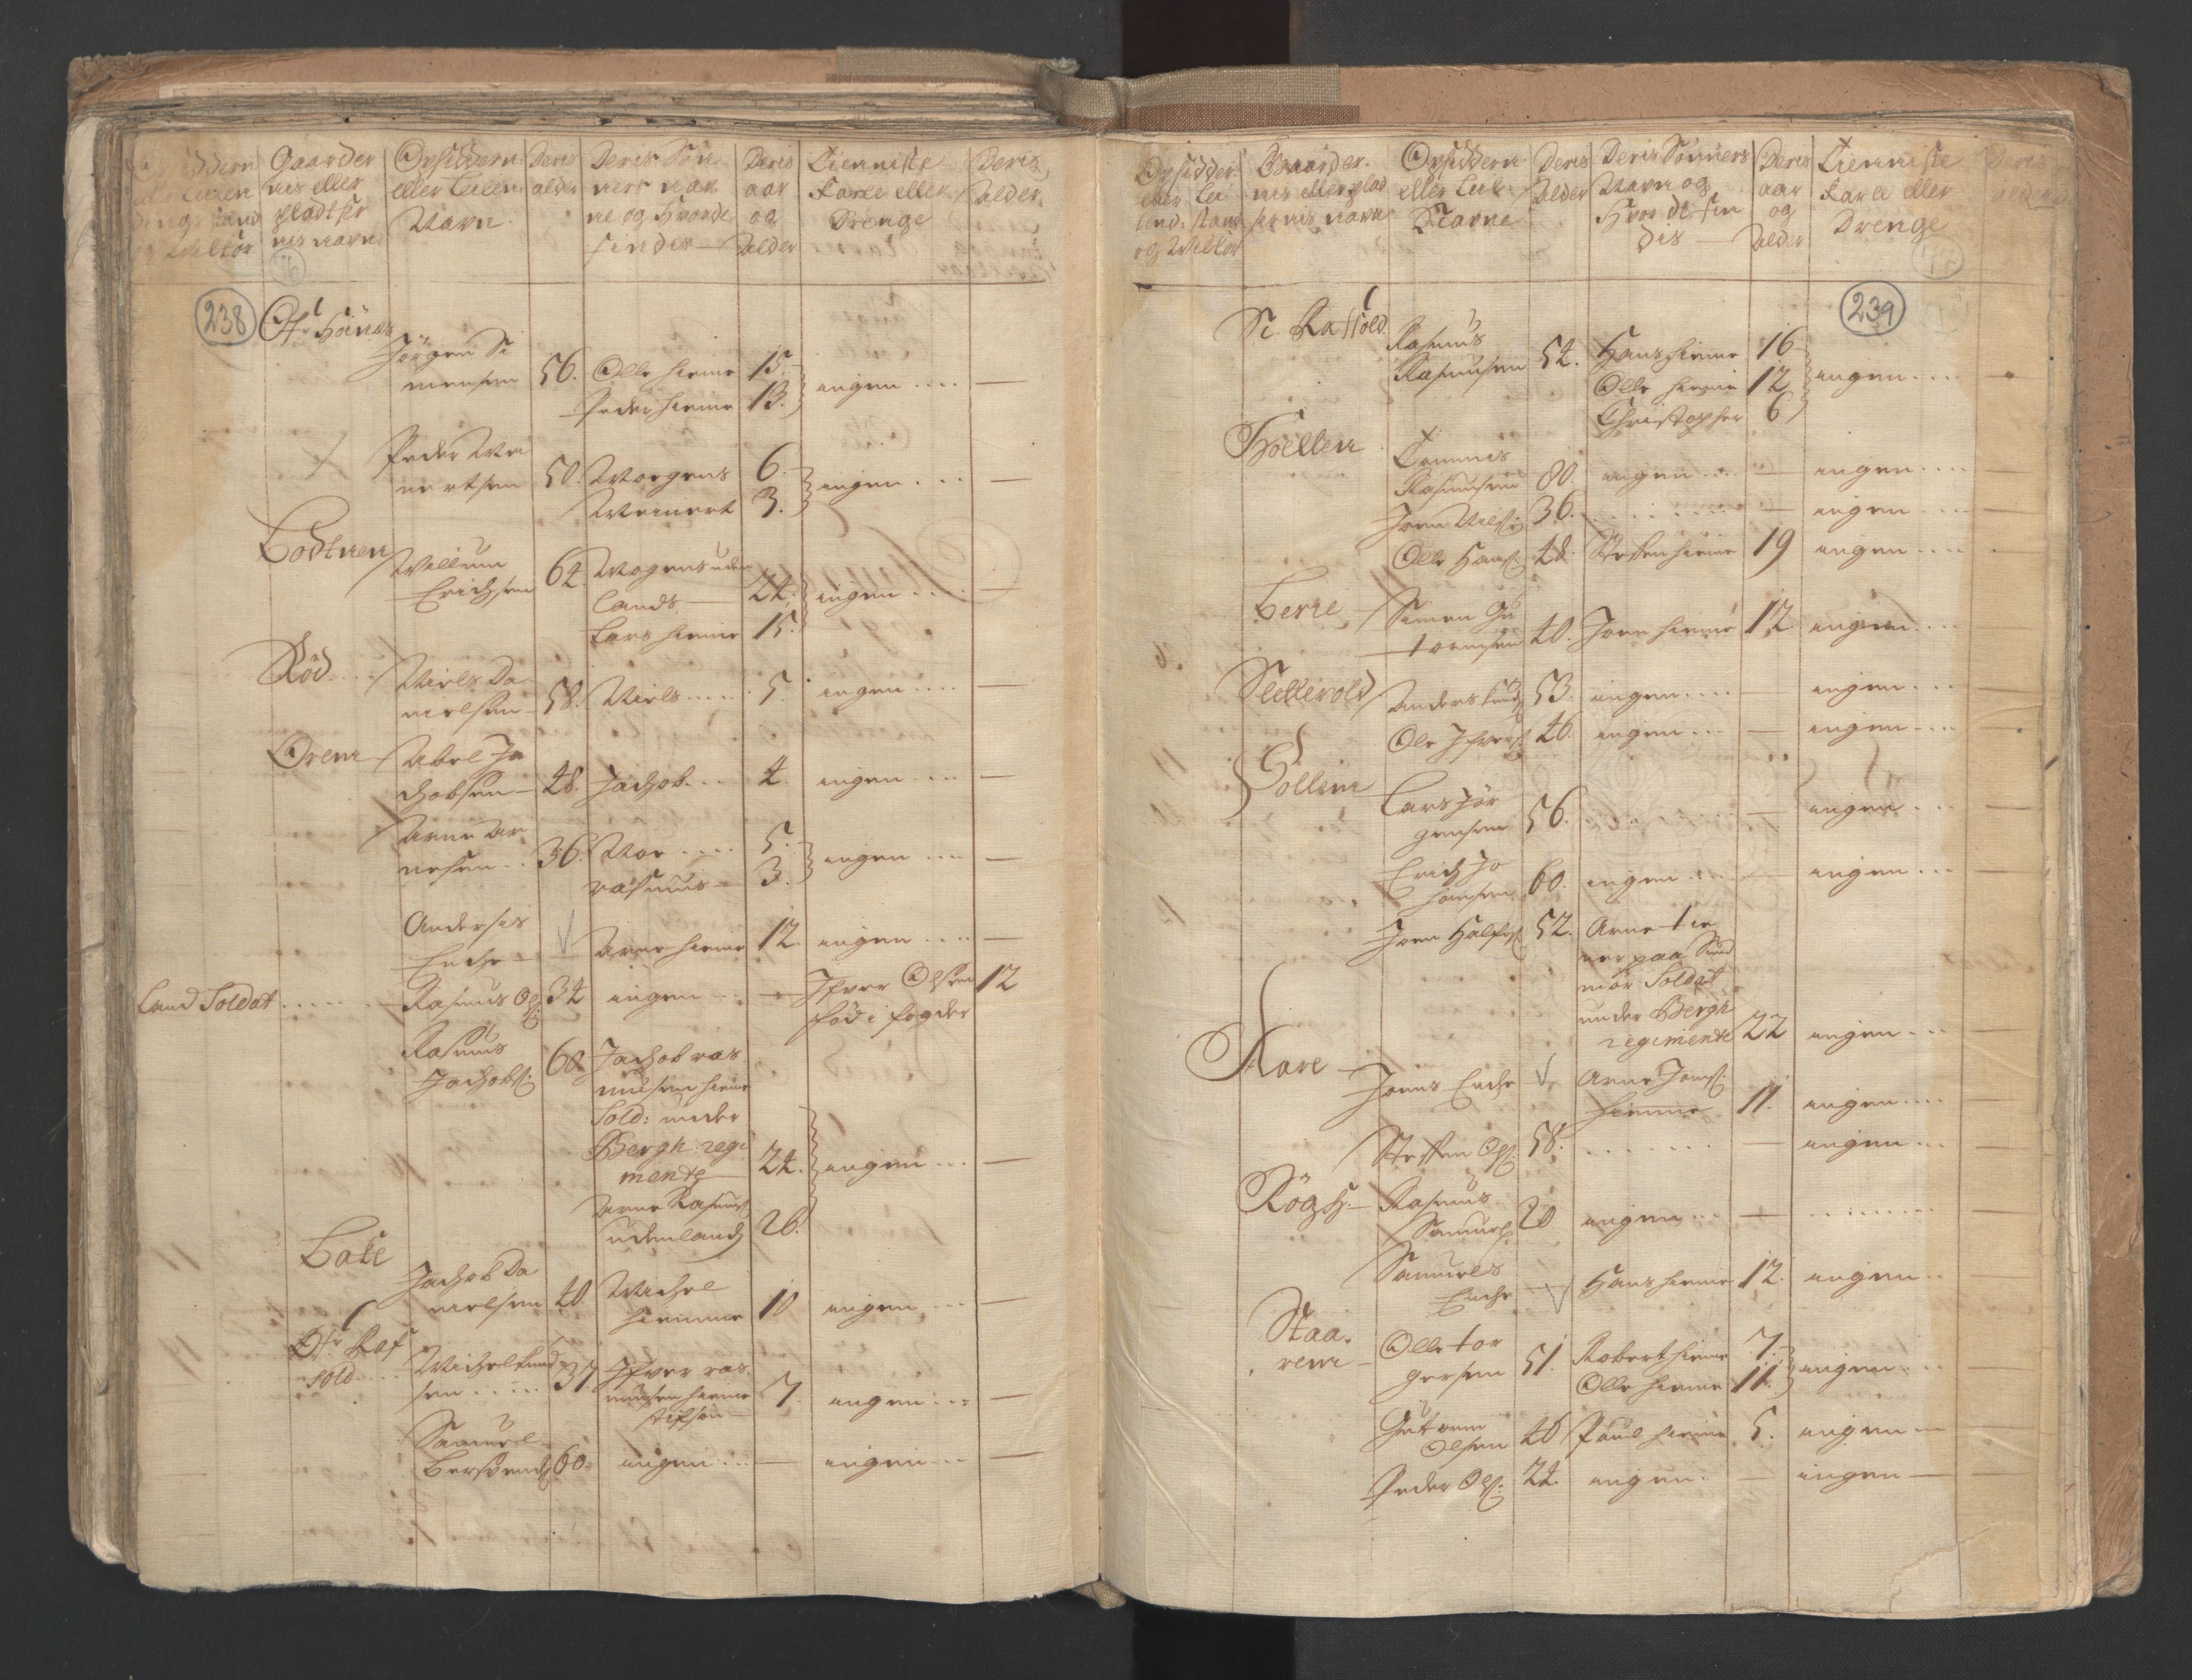 RA, Manntallet 1701, nr. 9: Sunnfjord fogderi, Nordfjord fogderi og Svanø birk, 1701, s. 238-239